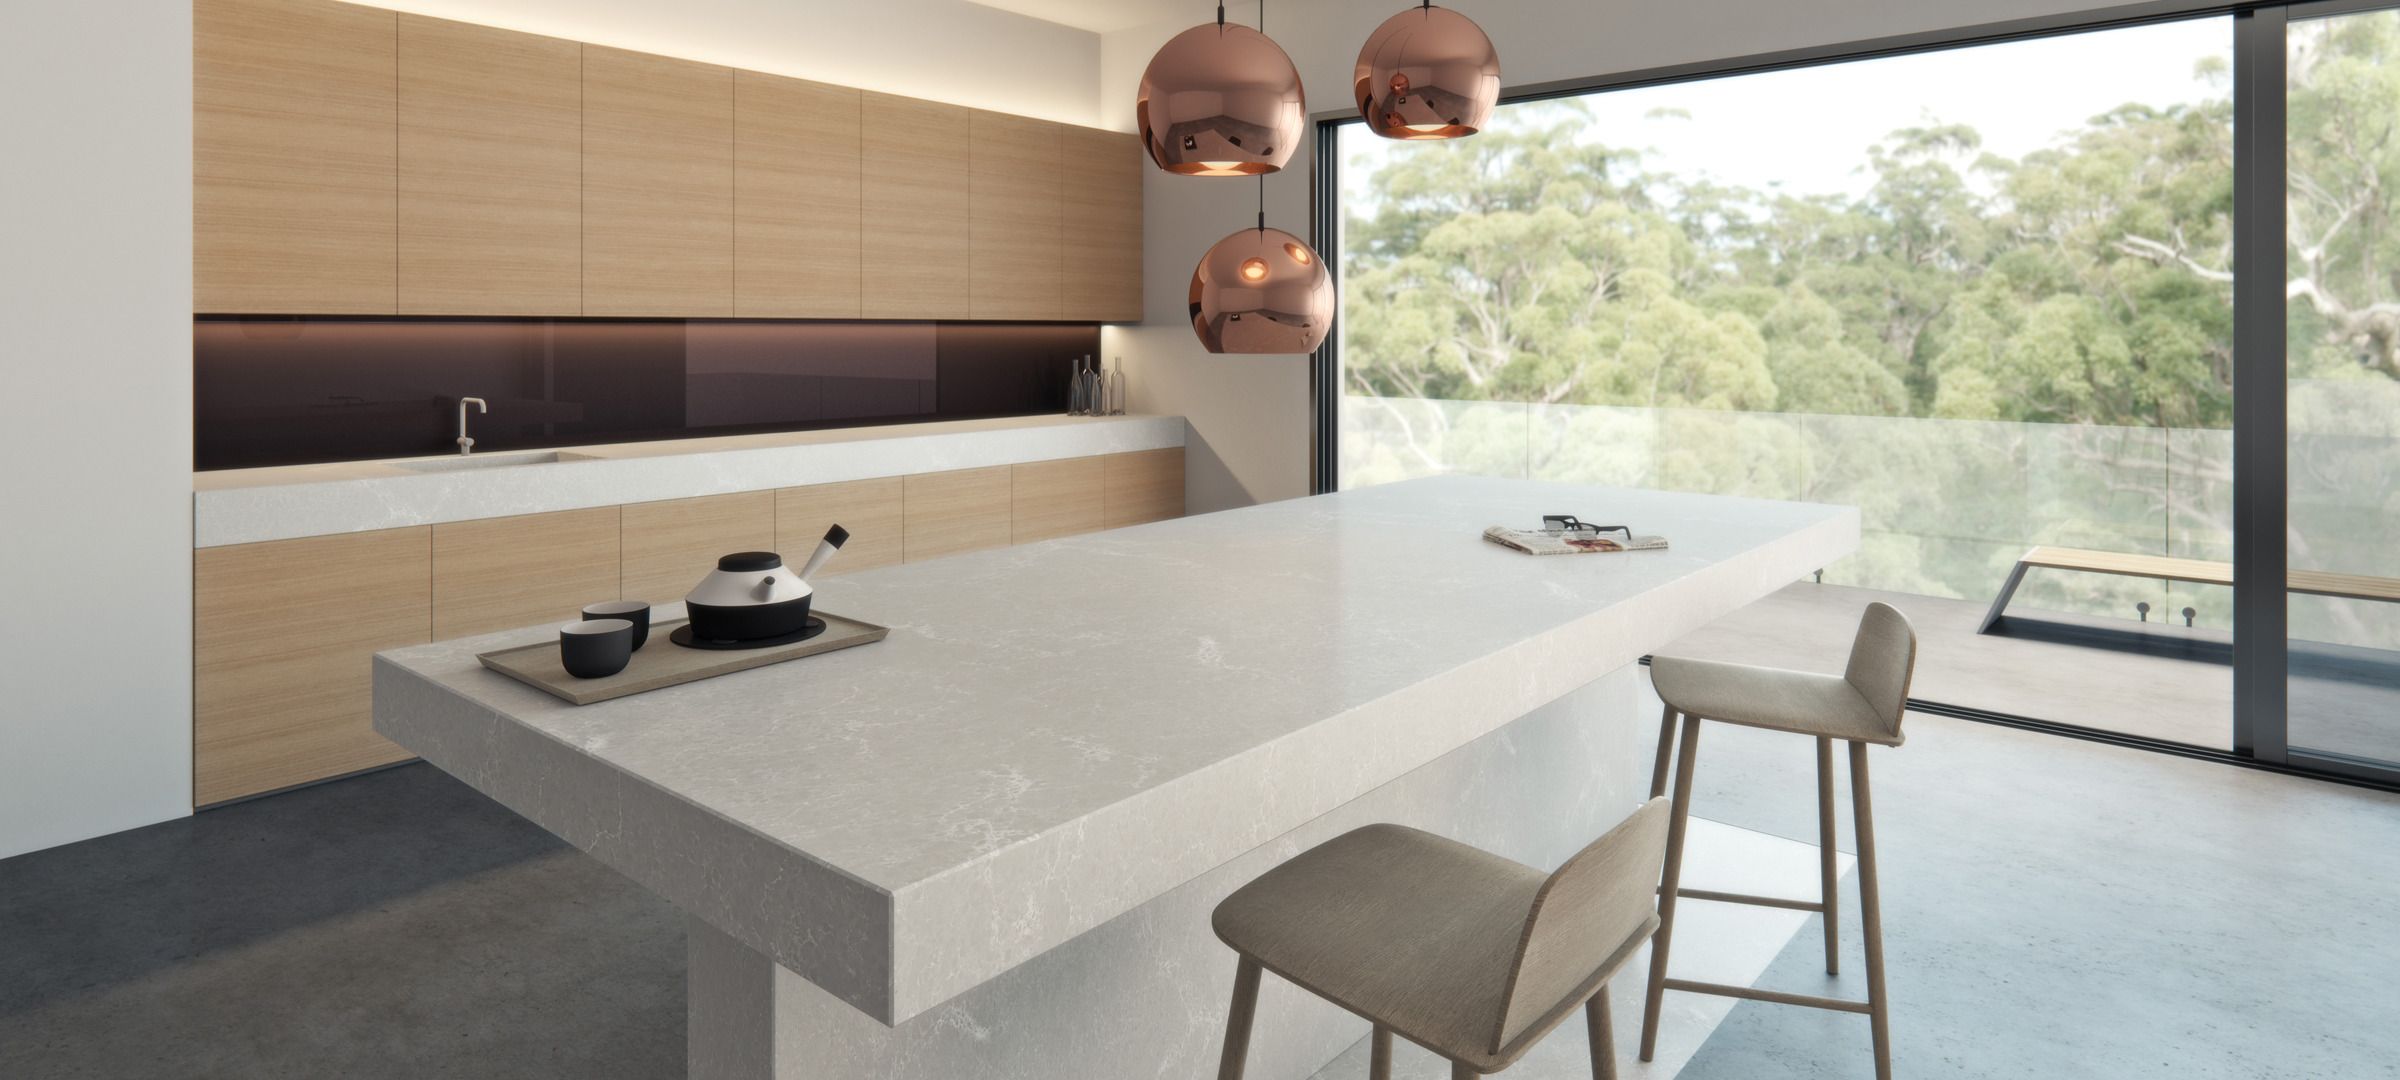 Quartz Countertops - Size & Styles - Premium Granite